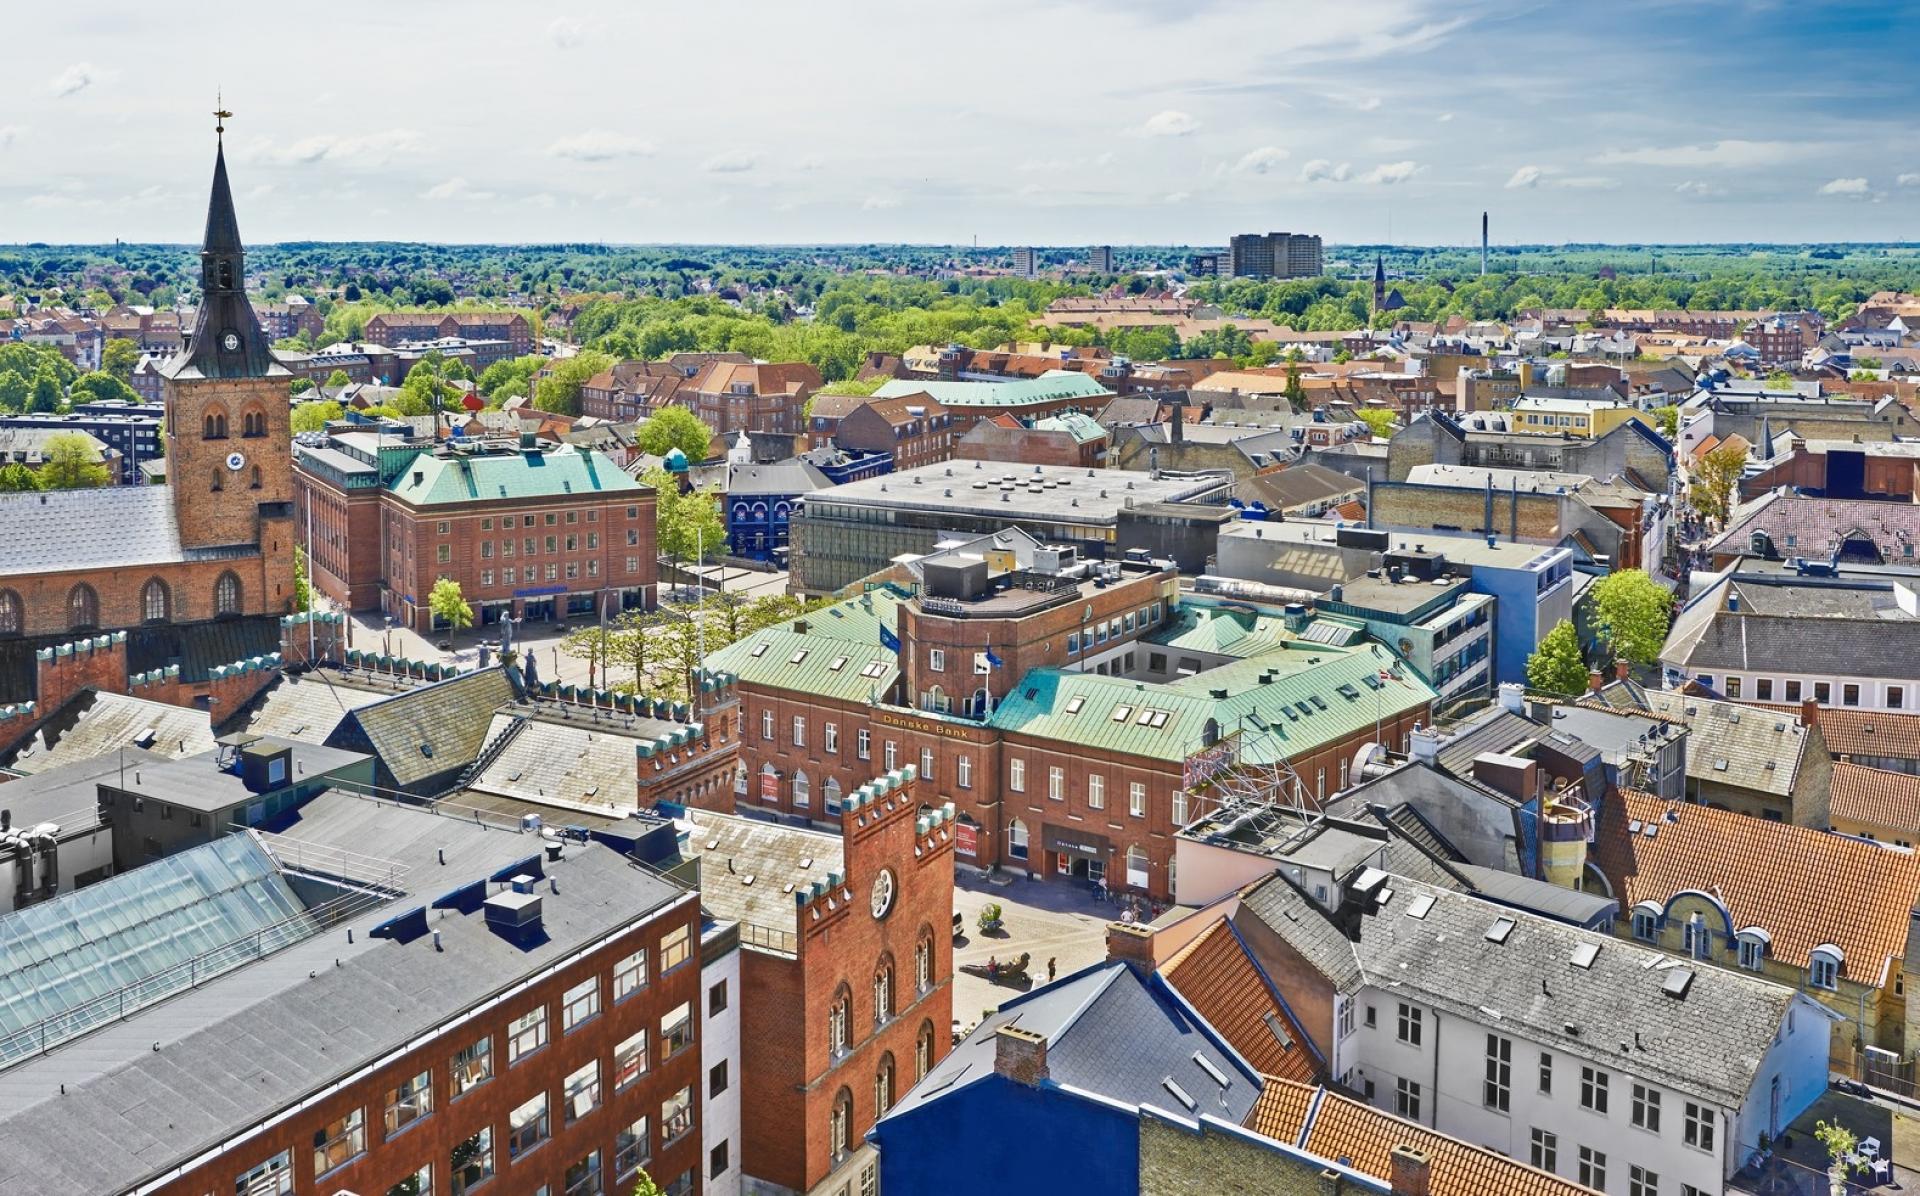 Andre byer i verden får nu mulighed for at lade sig inspirere af, hvordan projektet Velfærdens Fundament har løftet Odense i forhold til bl.a. borgerinddragelse med mere end 27.000 odenseanere som aktive medspillere. Foto: Getty Images